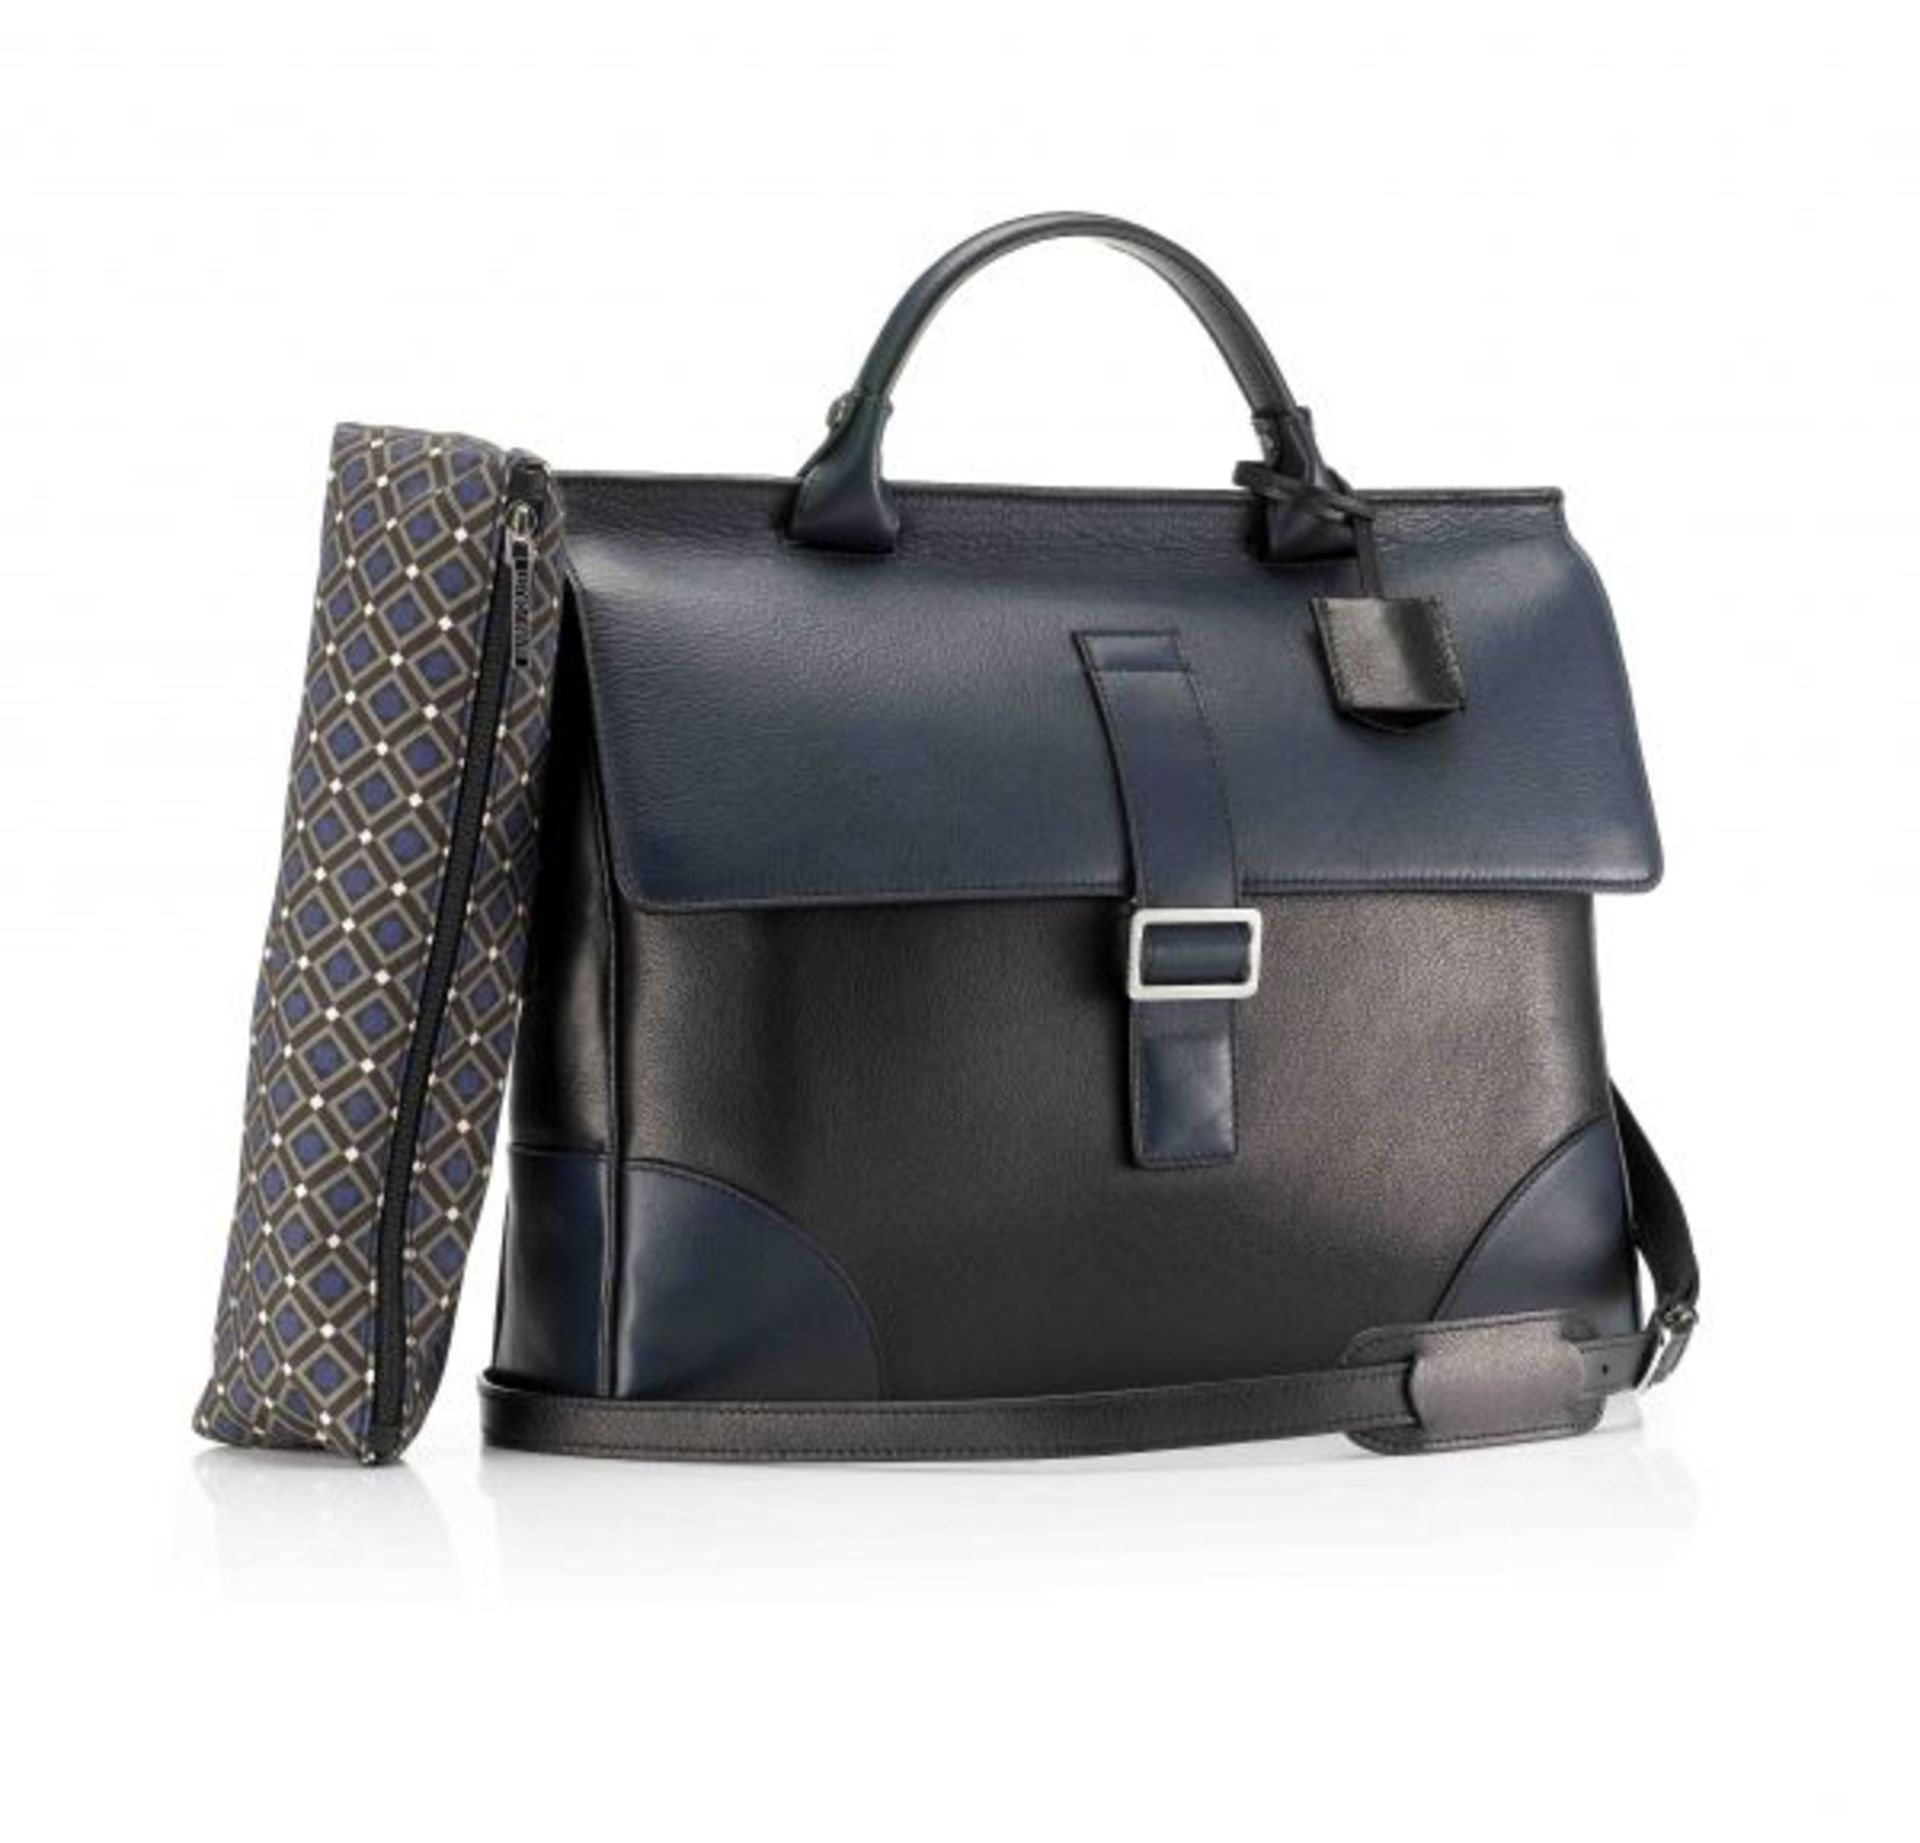 LARGE 48HR BRIEFCASE MILANO NAPPA BRIEFCASE VENICE RRP £695.00 The Milano Nappa leather briefcase